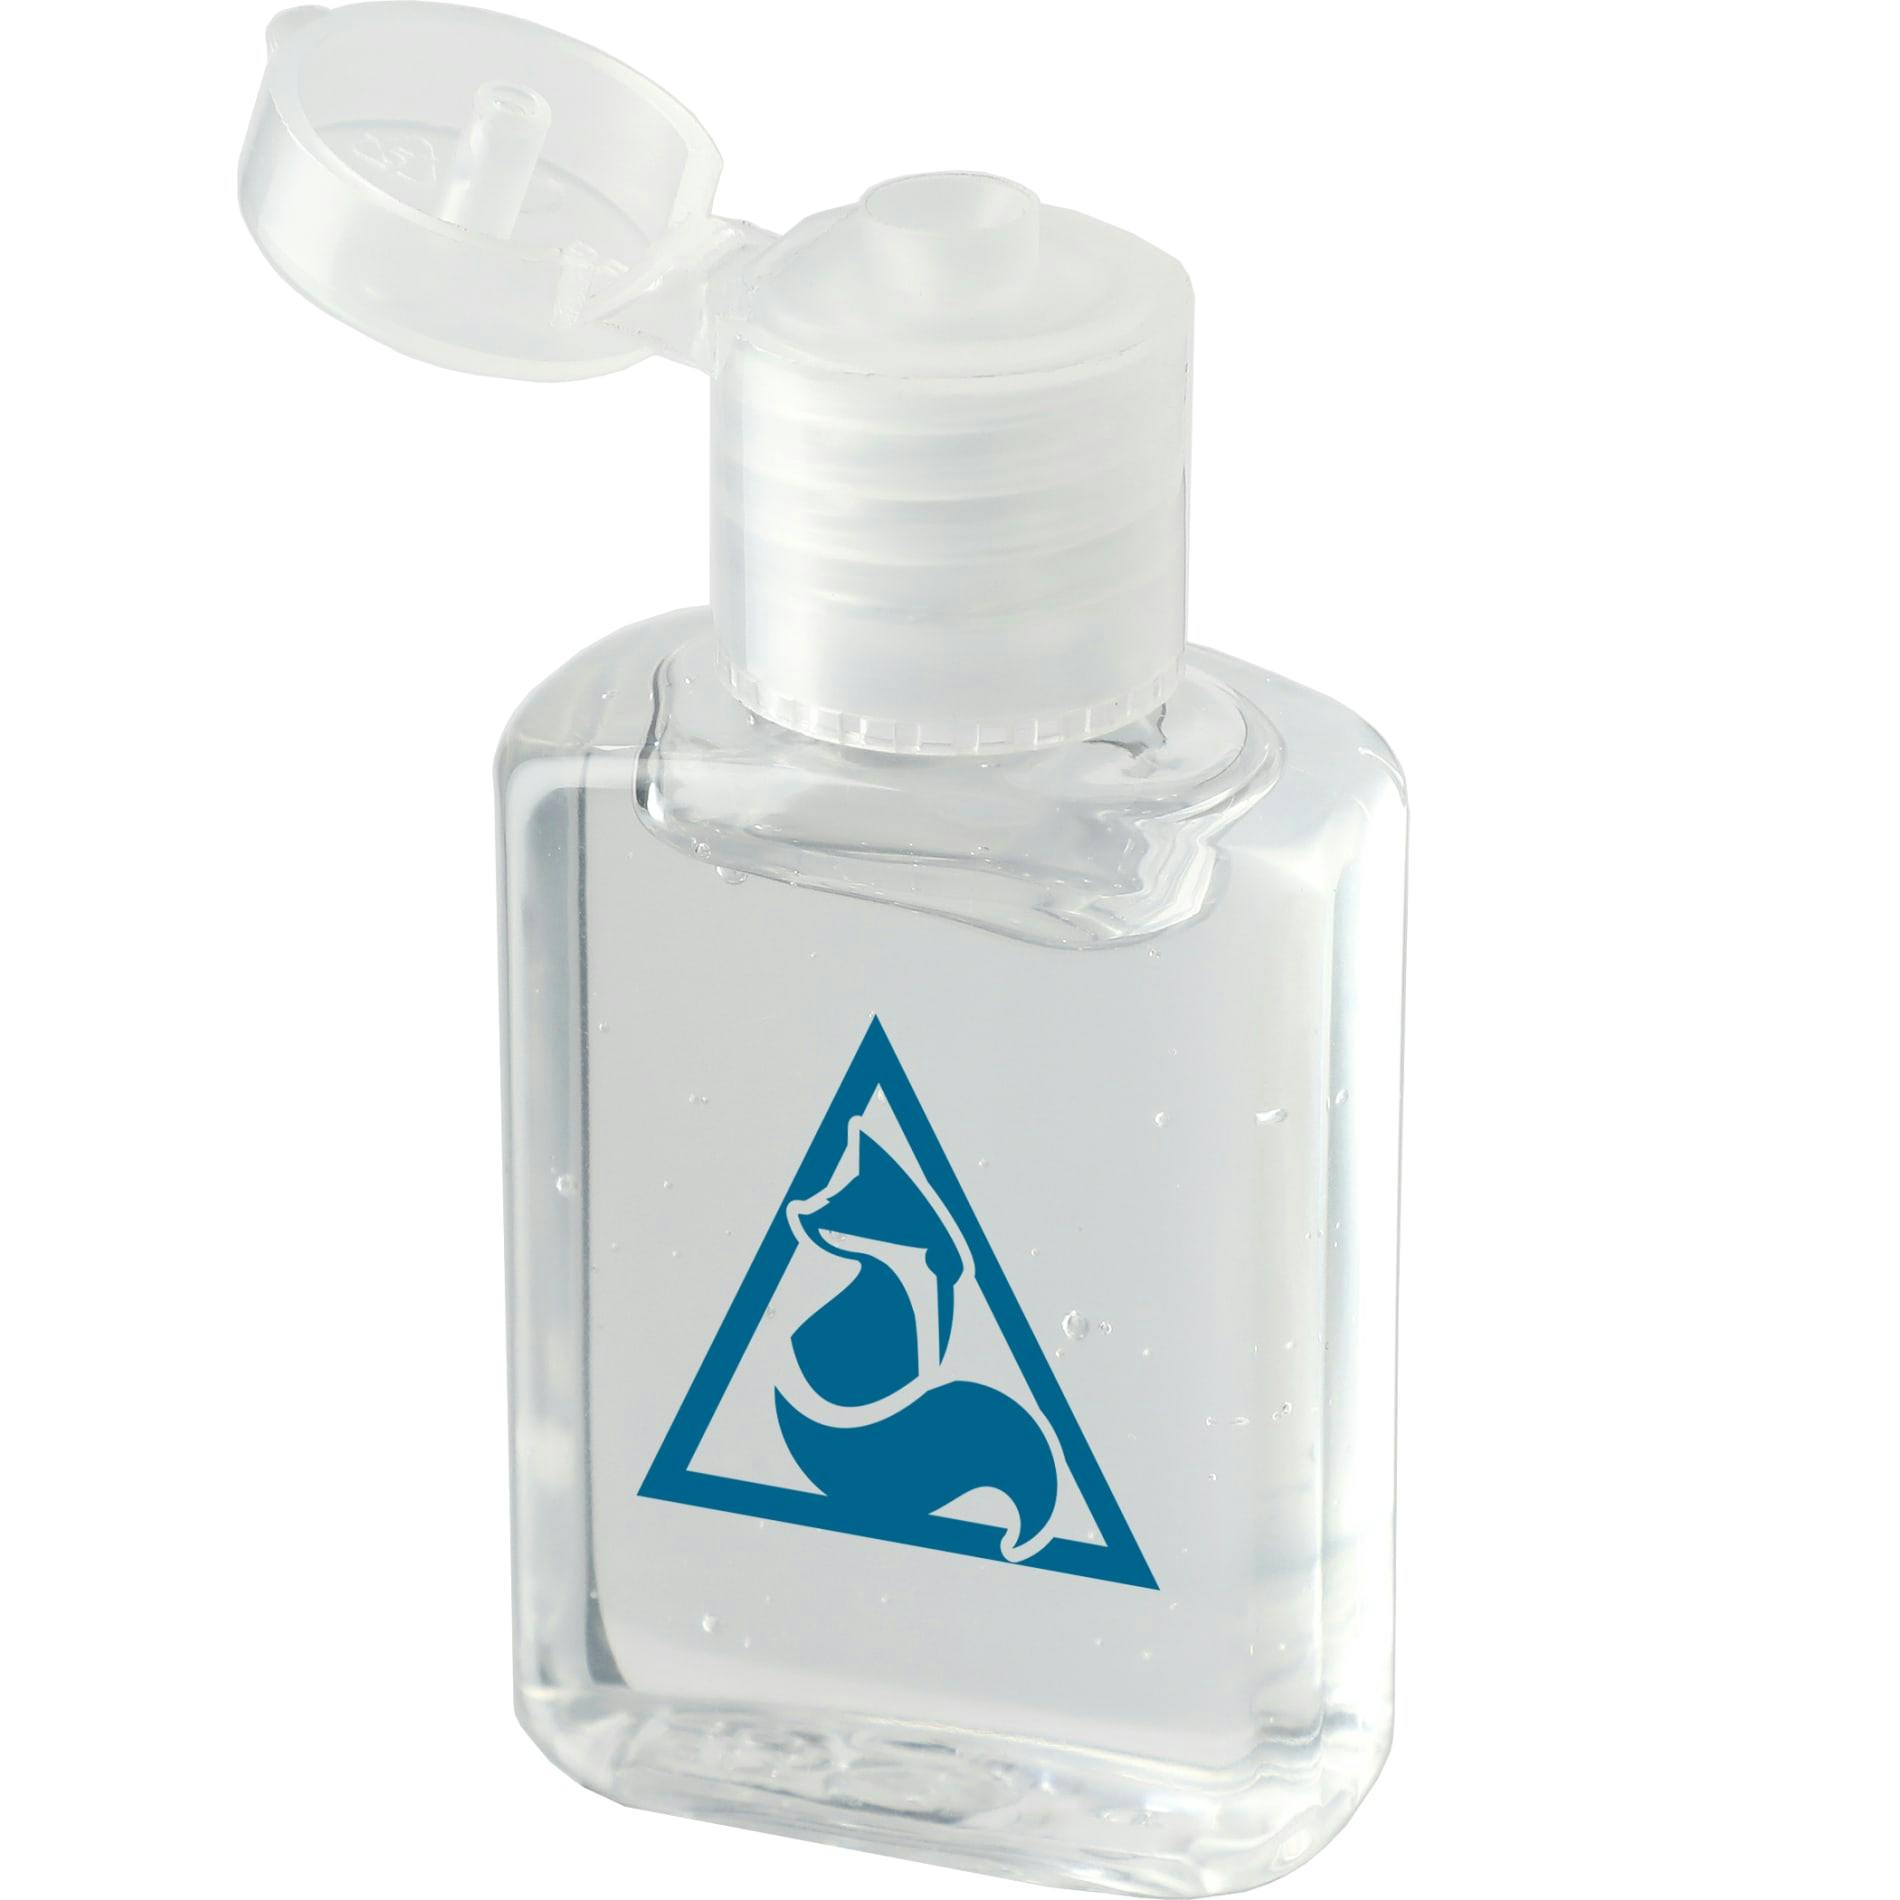 0.5oz Gel Hand Sanitizer - additional Image 1